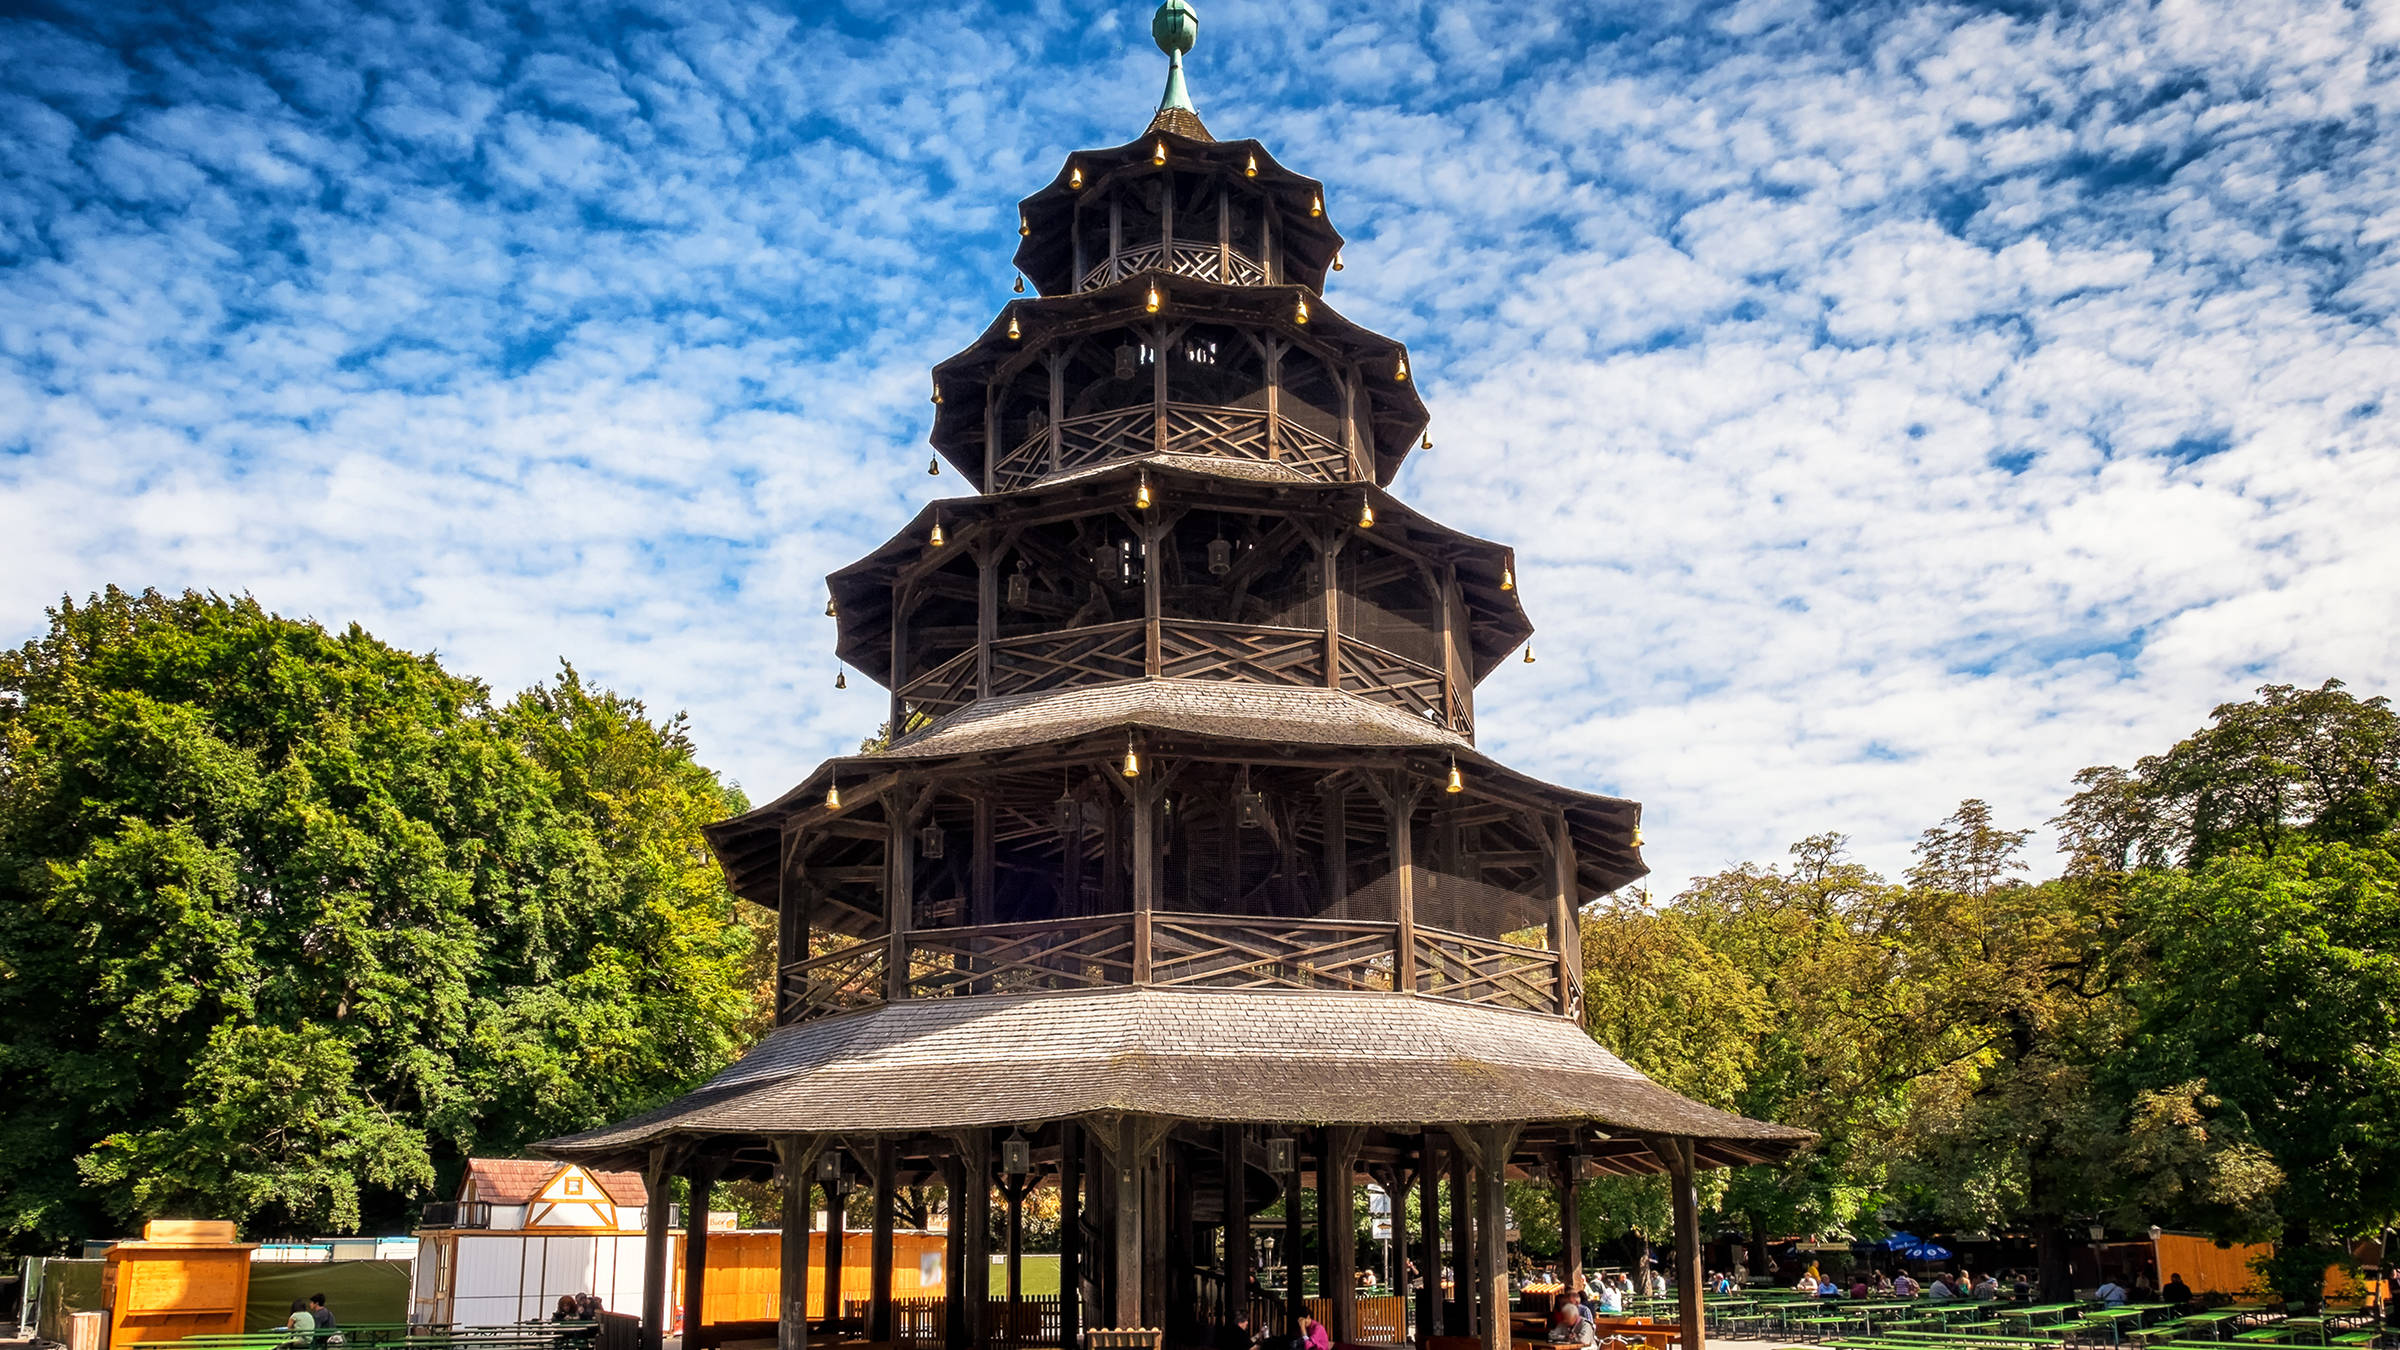 Chinesischer Turm in München | H-Hotels.com